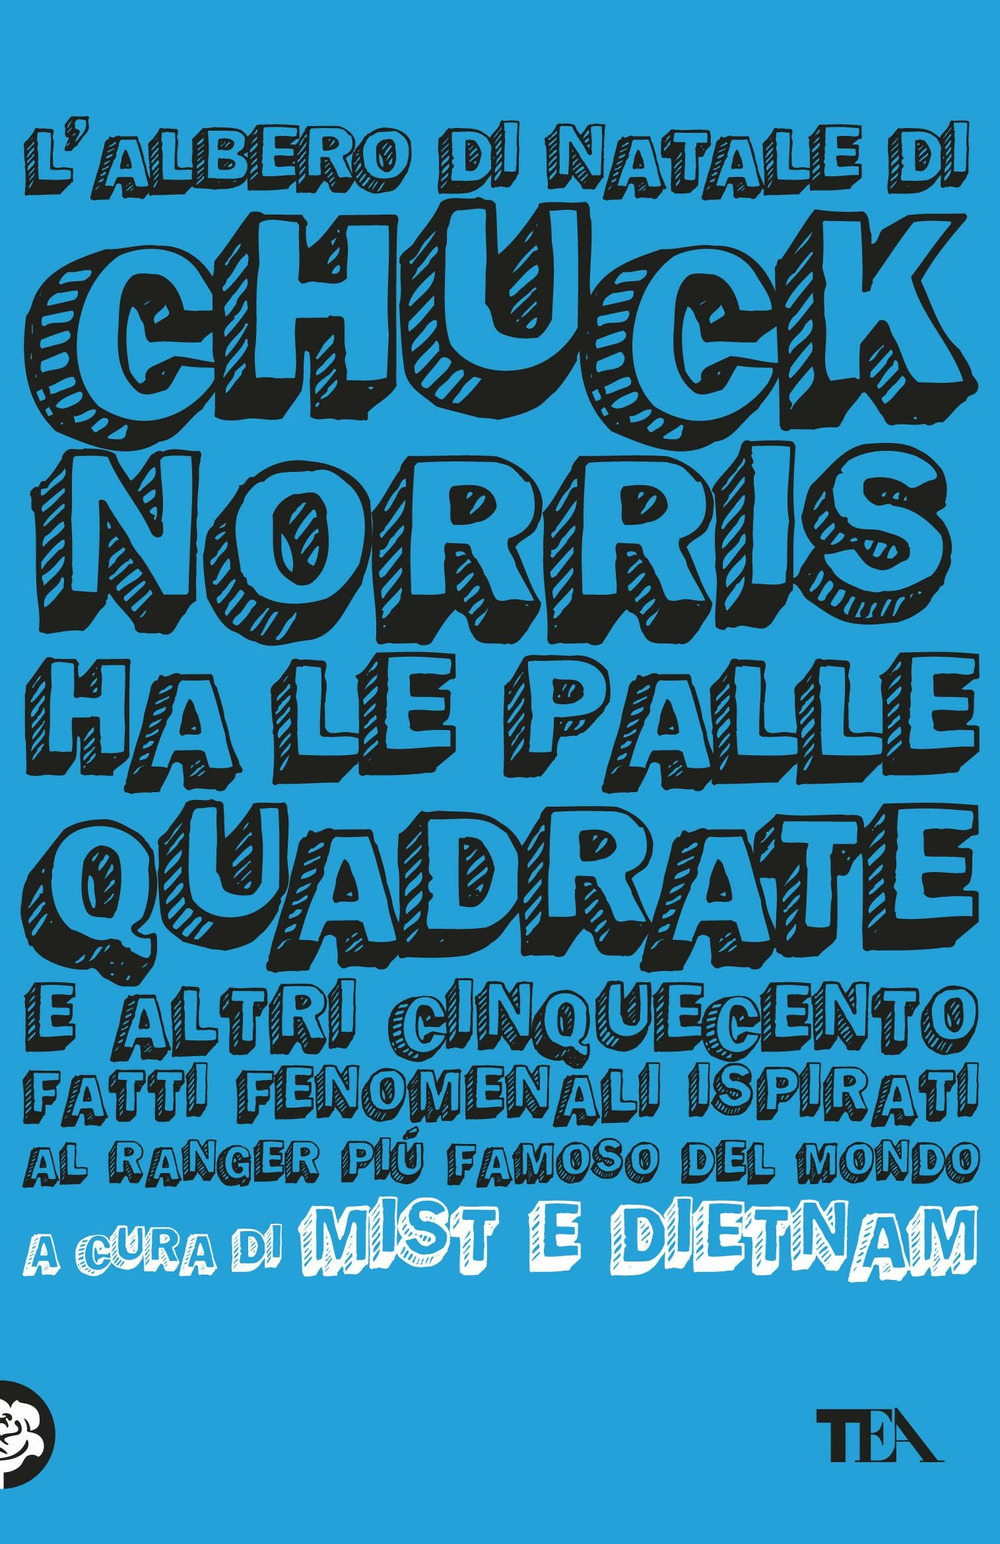 L'albero di Natale di Chuck Norris ha le palle quadrate e altri cinquecento fatti fenomenali ispirati al ranger più famoso del mondo